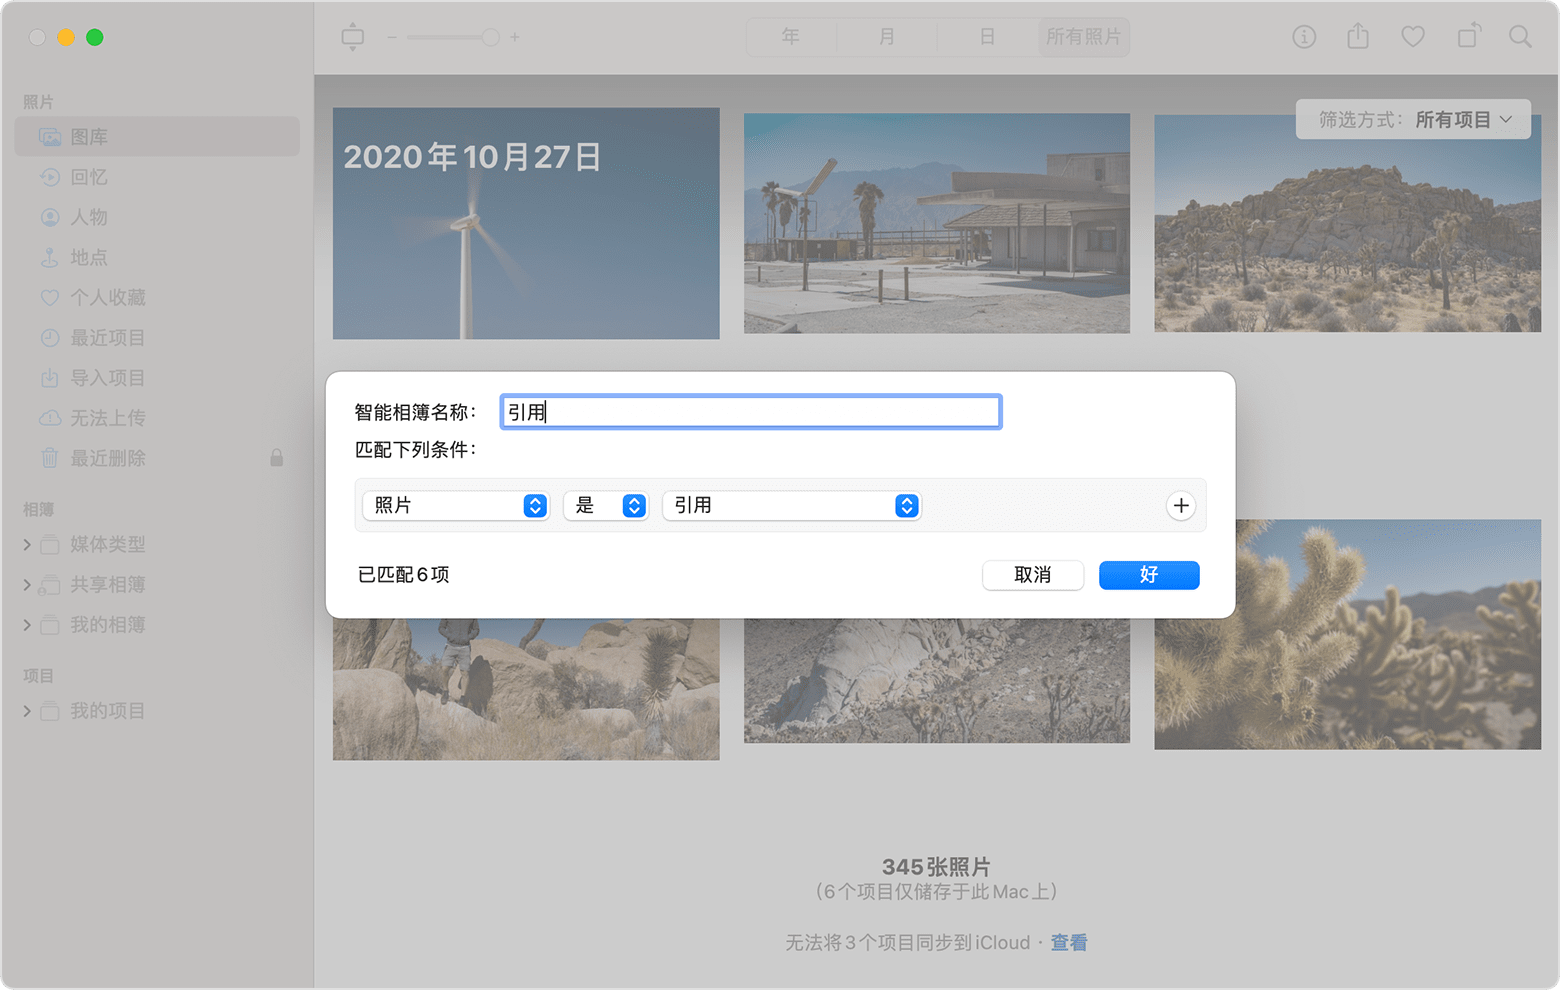 “新建智能相簿”对话框显示当前将一个智能相簿命名为“引用”，并将条件设置为“照片是引用”。